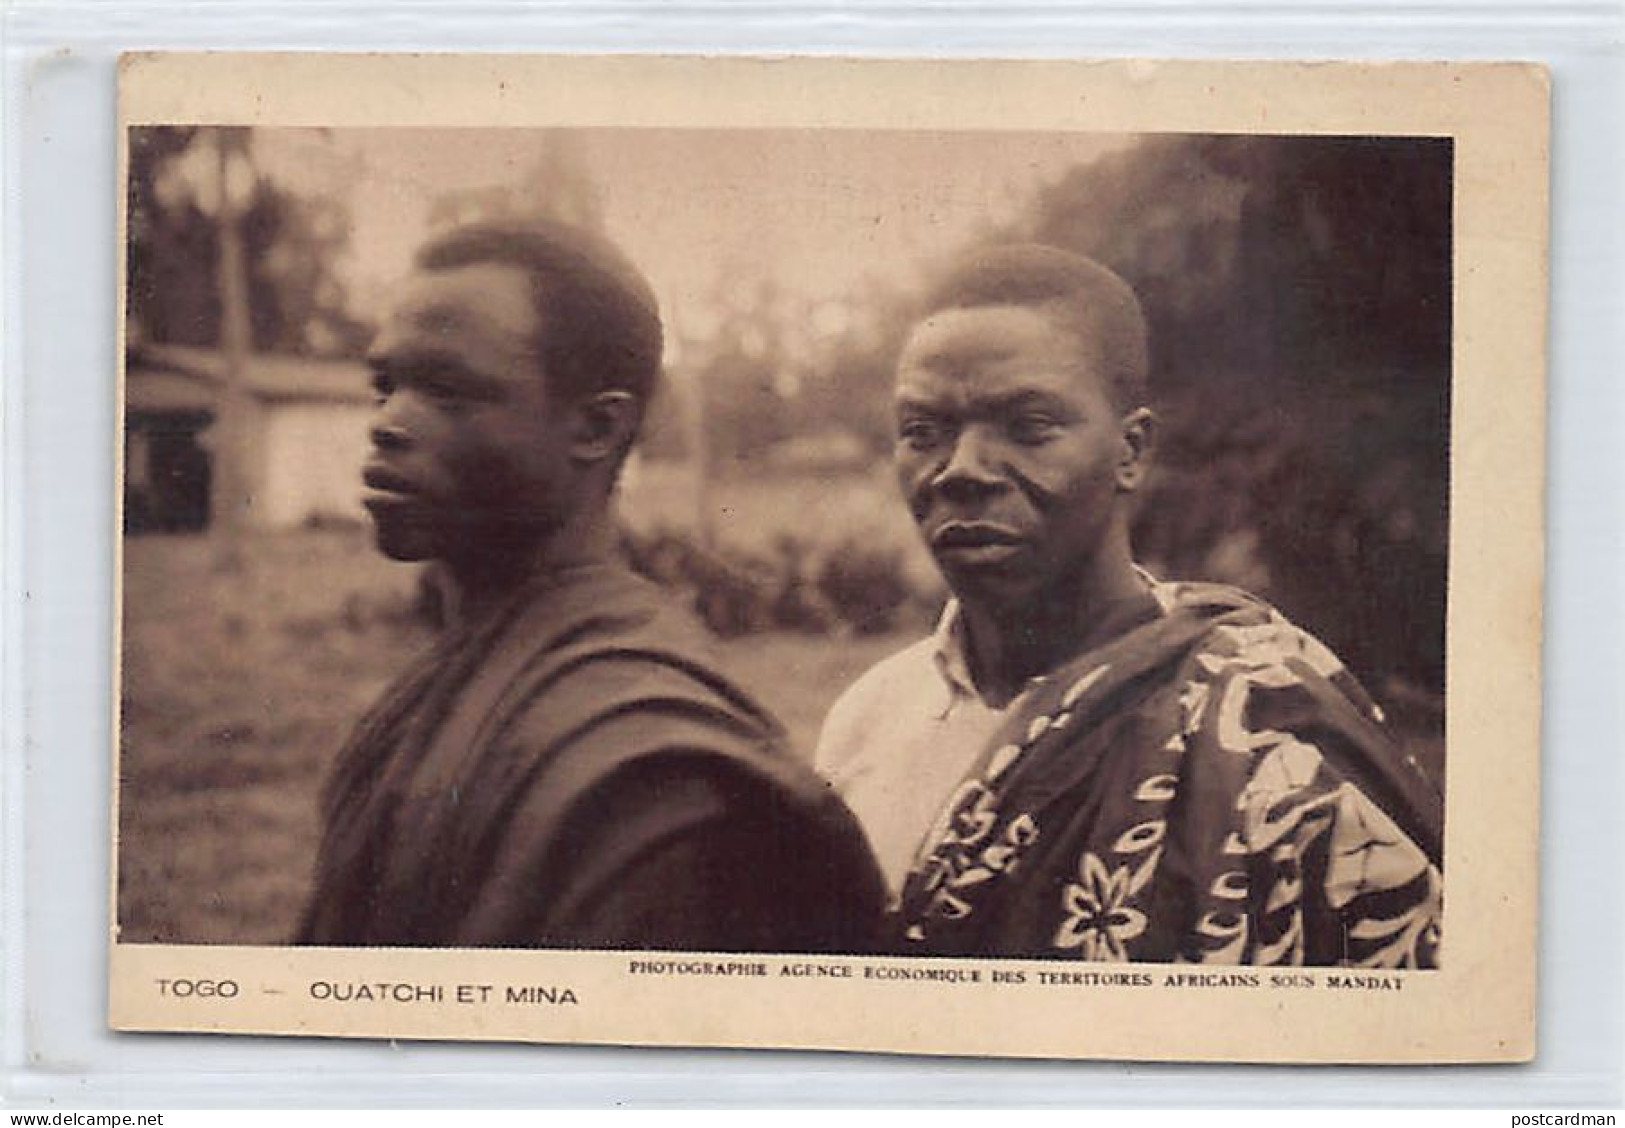 TOGO - Ouatchi Et Mina, Types D'hommes - VOIR LES SCANS POUR L'ÉTAT - Ed. Agence économique De Territoires Africains Sou - Togo